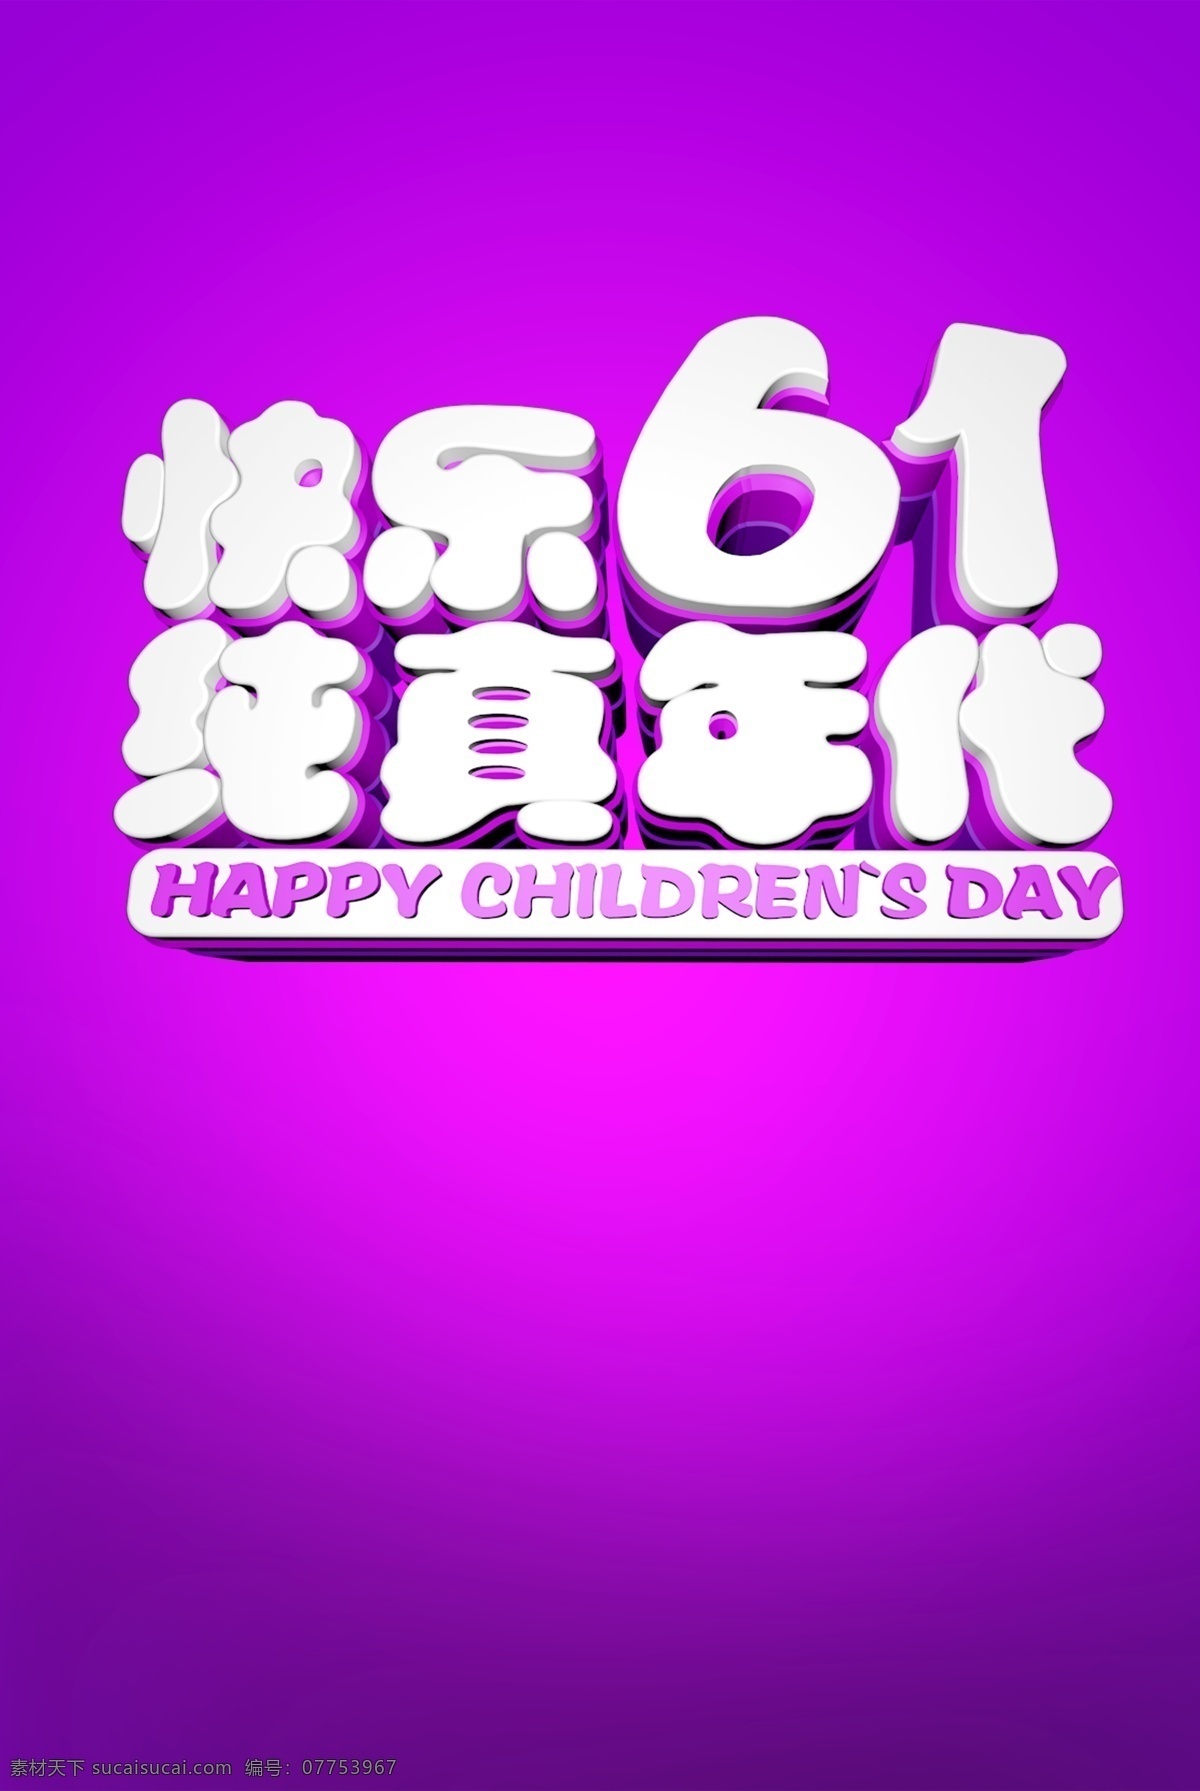 快乐 61 纯真 字体 元素 紫色背景 六一儿童节 儿童节快乐 psd素材 快乐61 纯真年代 白色 元素设计 节日元素